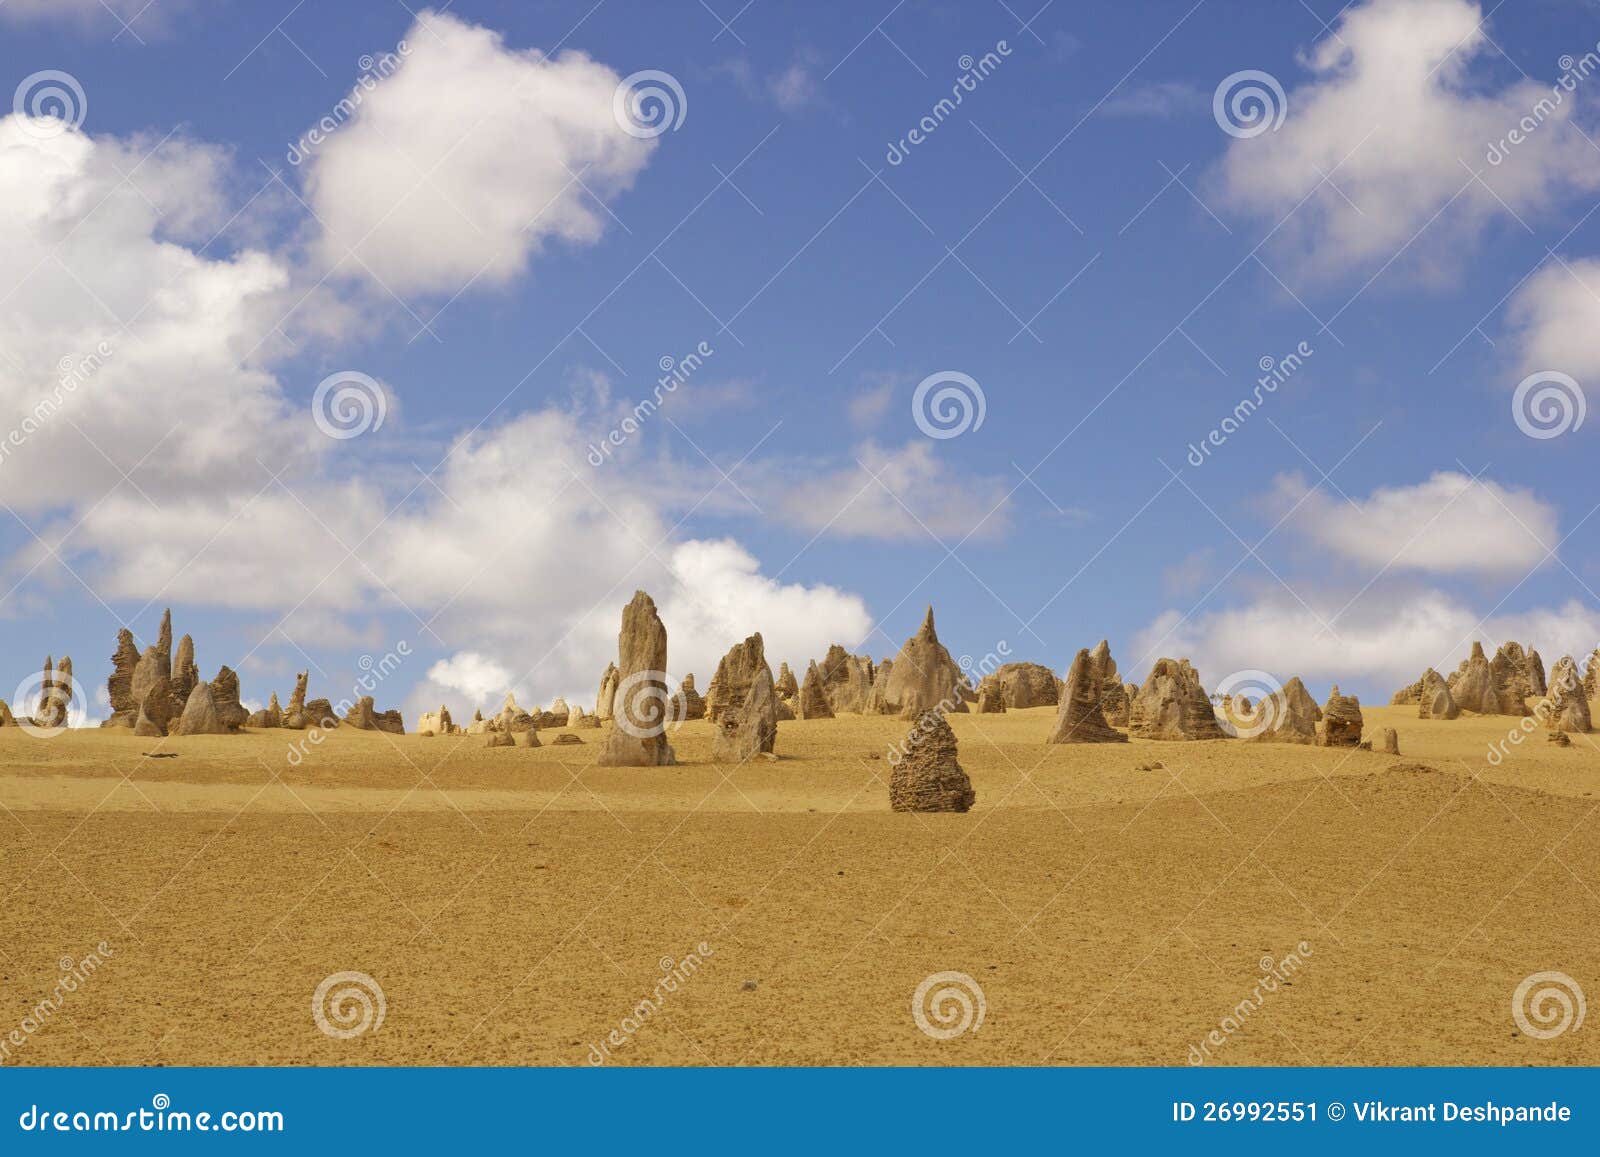 the pinnacles desert near perth